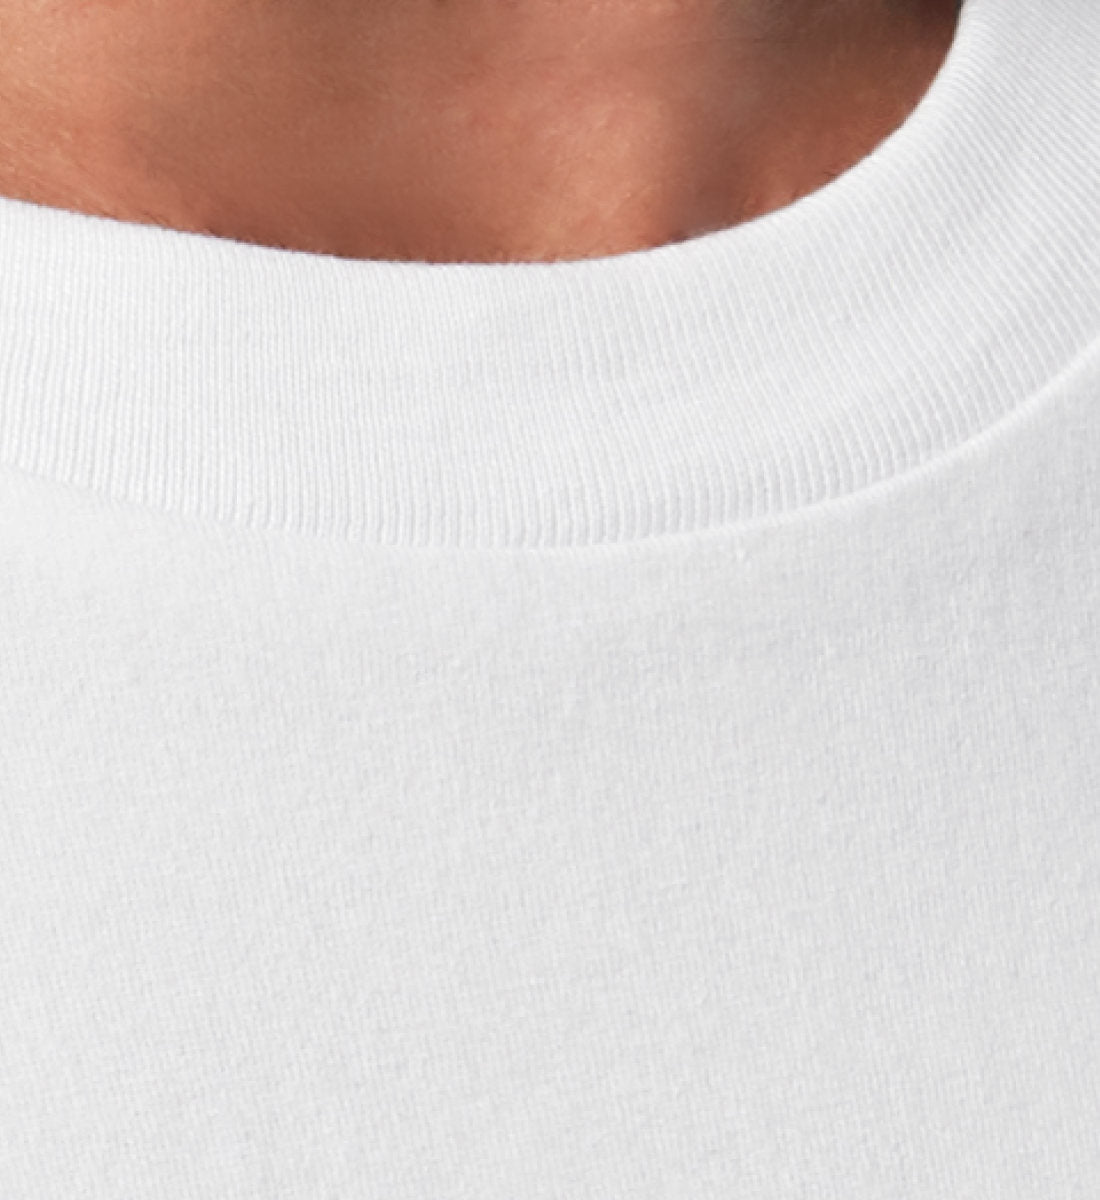 T-Shirt Relaxed Fit Unisex für Damen und Herren bedruckt mit Print Design Aufdruck der Weekend Shirt Edition im Roger Rockawoo Clothing Webstore Subcultures Finest White-3